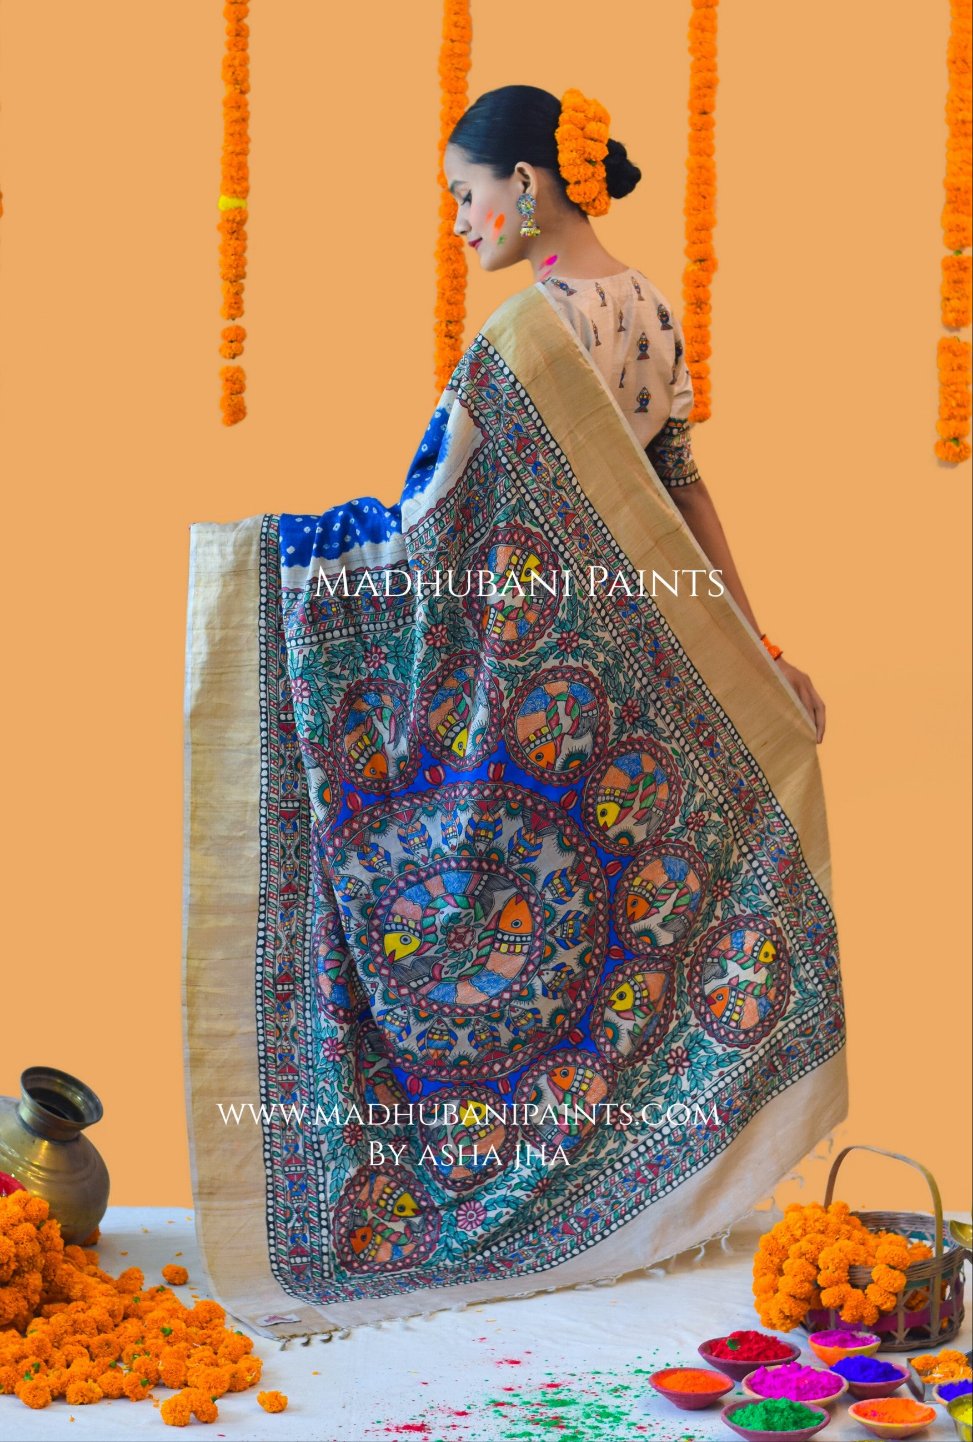 MATSYANGANA Hand-painted Bandhini Madhubani Tussar Silk Saree